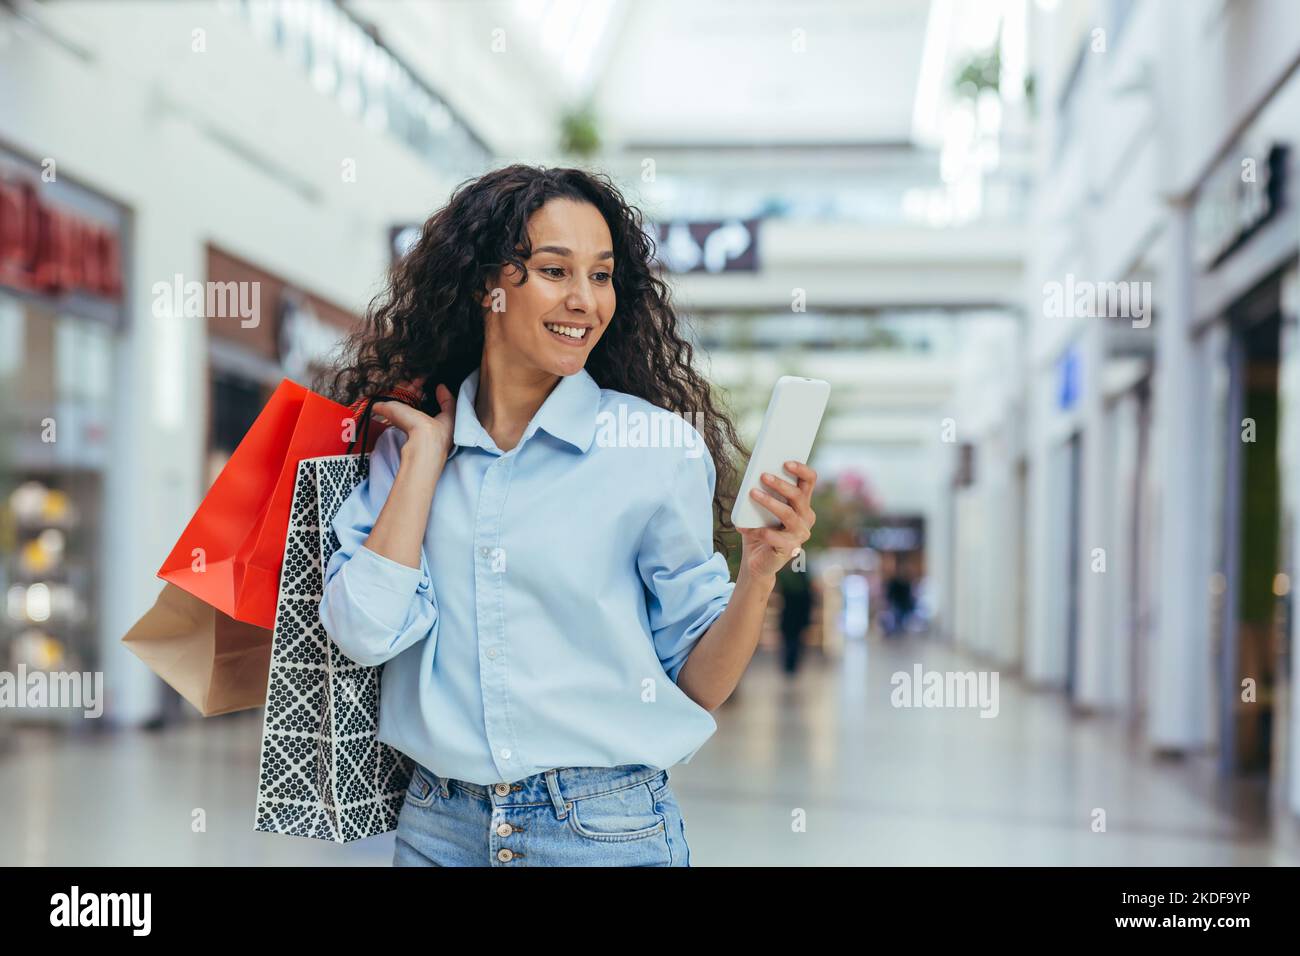 Mujer feliz comprando ropa durante el período de descuentos y ofertas promocionales, mujer hispana sonriendo y feliz navegando descuentos en línea utilizando el teléfono inteligente, dentro de una gran tienda moderna. Foto de stock